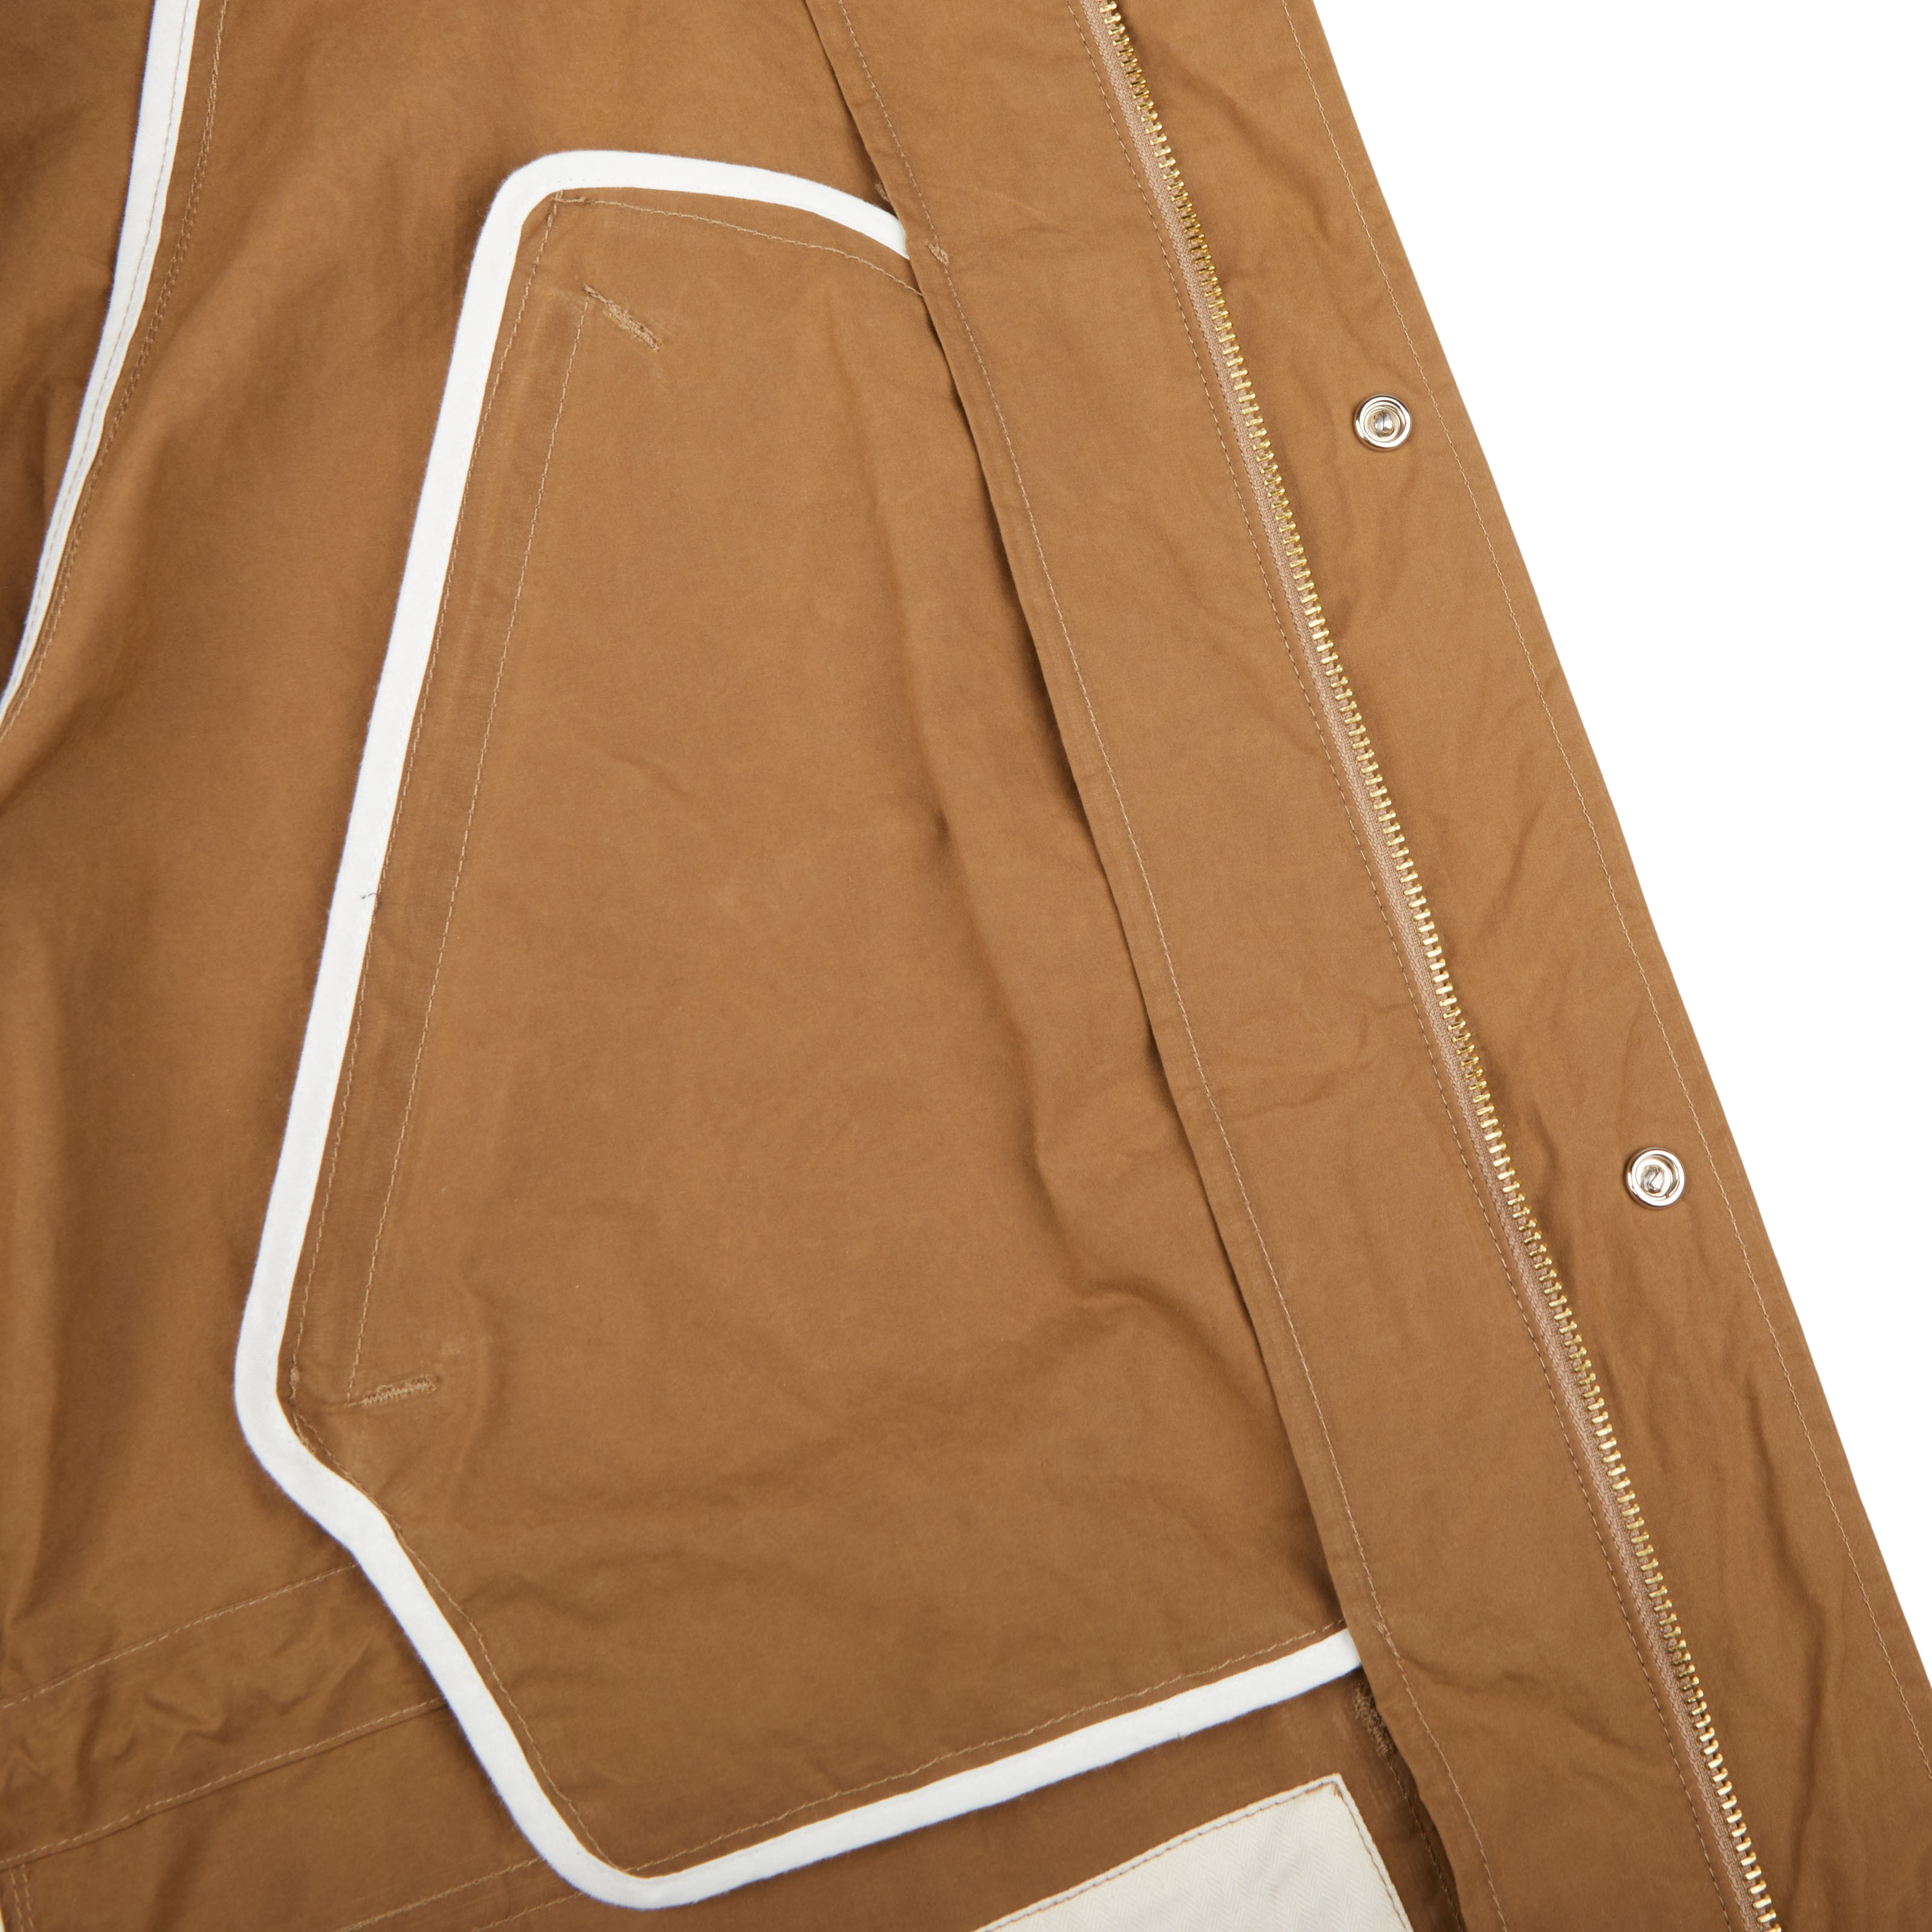 Manifattura Ceccarelli Dark Tan Cotton Canvas All Season Coat Inside